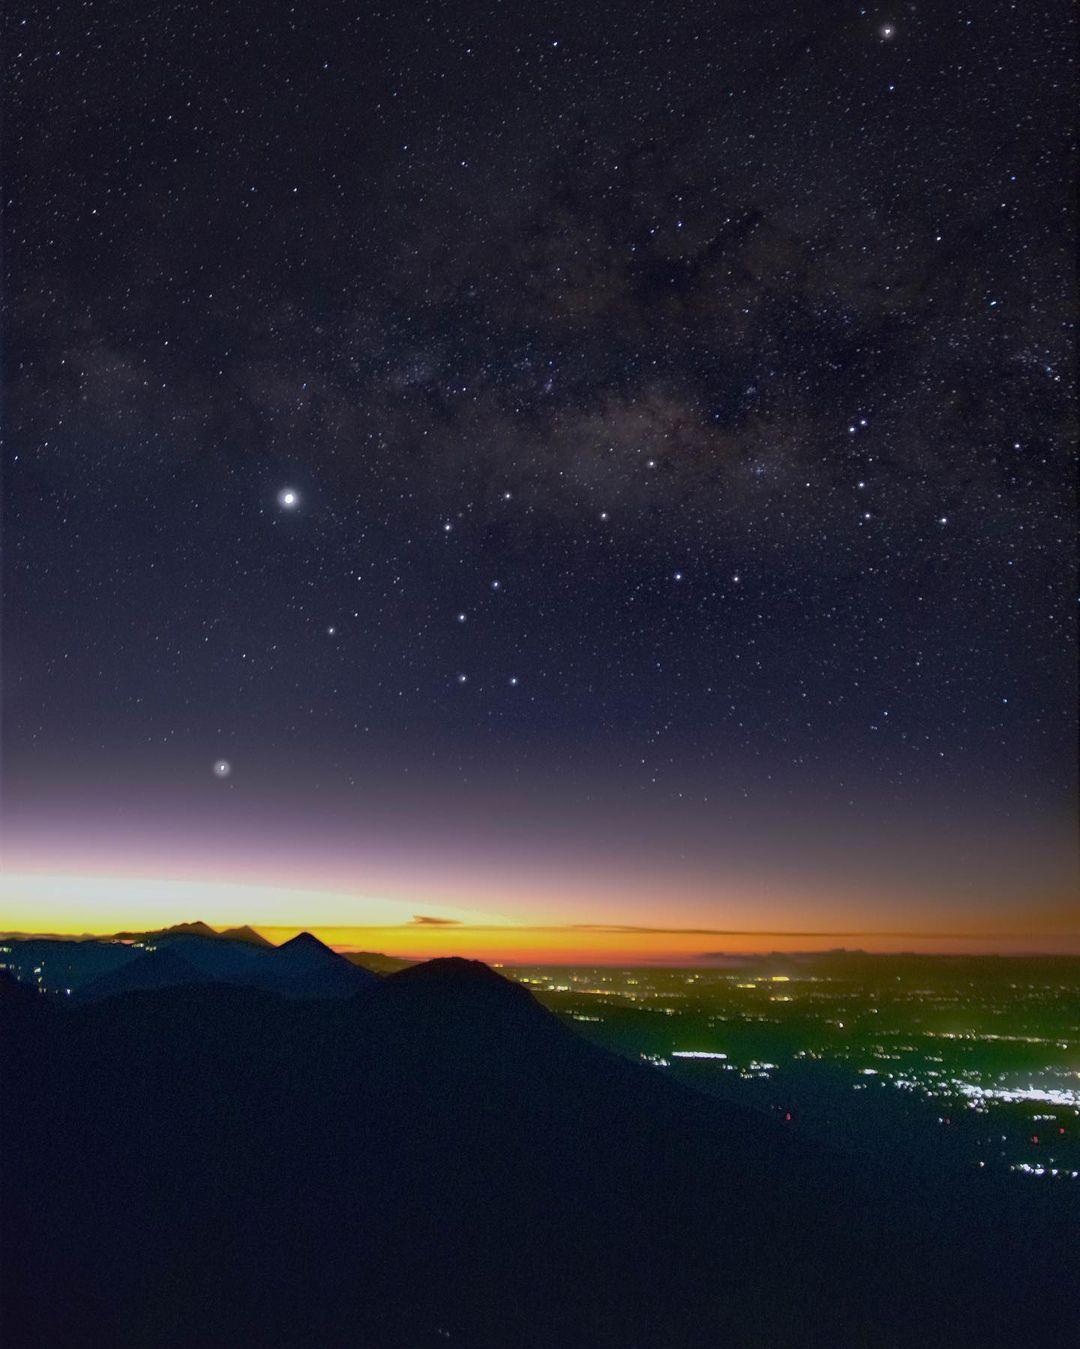 class="content__text"
 #📷 @
astro.wg
La Vía Láctea y Venus justo antes del amanecer, así como la Constelación de Sagitario desde la cumbre del Volcán Santa María ❤️
.
.
.
.

————— 
Comparte con nosotros tus publicaciones en instagram con el HT: #MundoChapin o #MundoChapinCom

 #Guatemala 
 